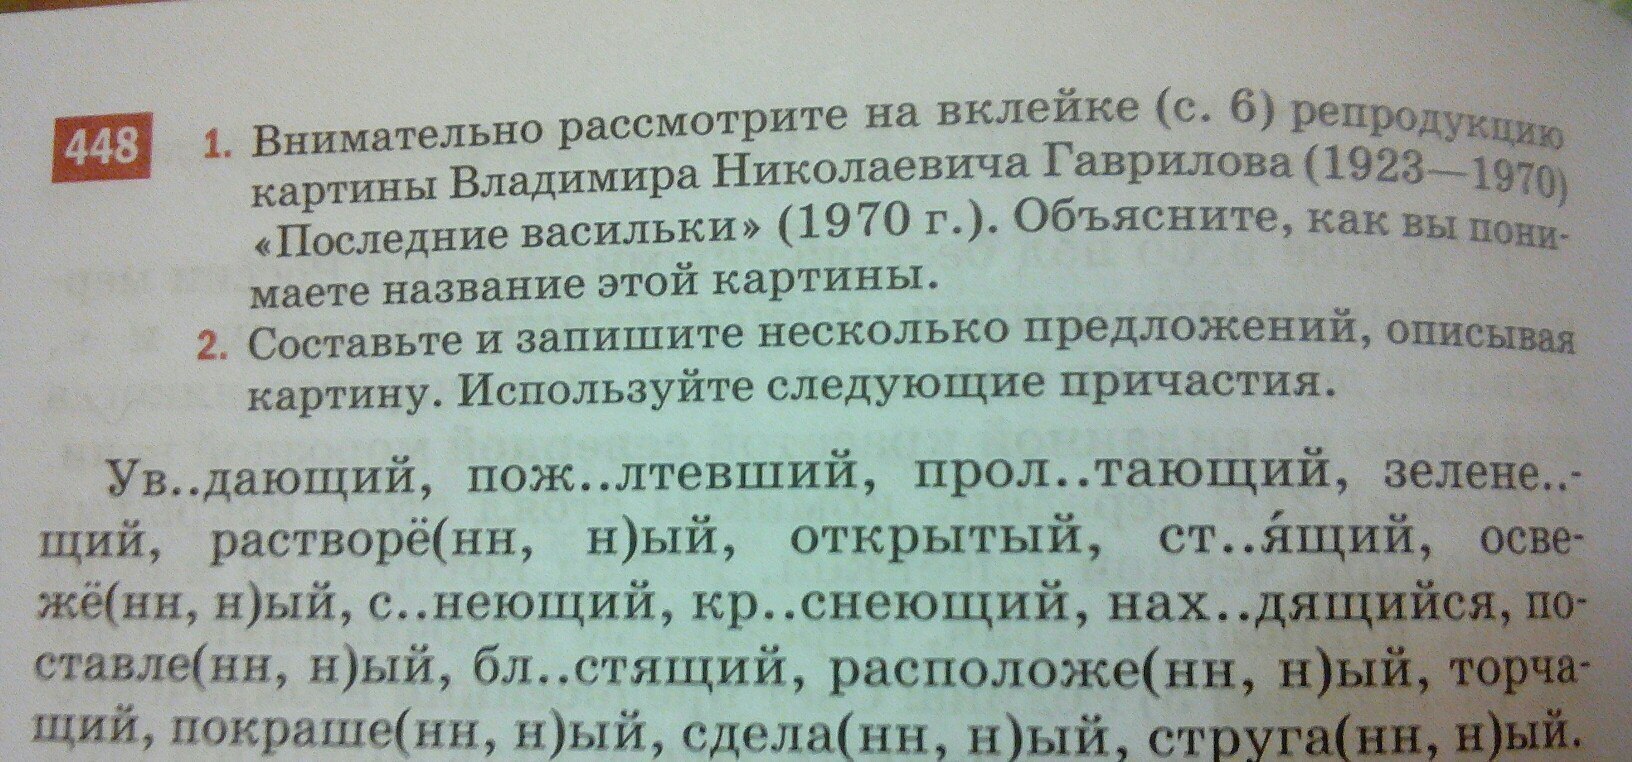 Русский язык 141